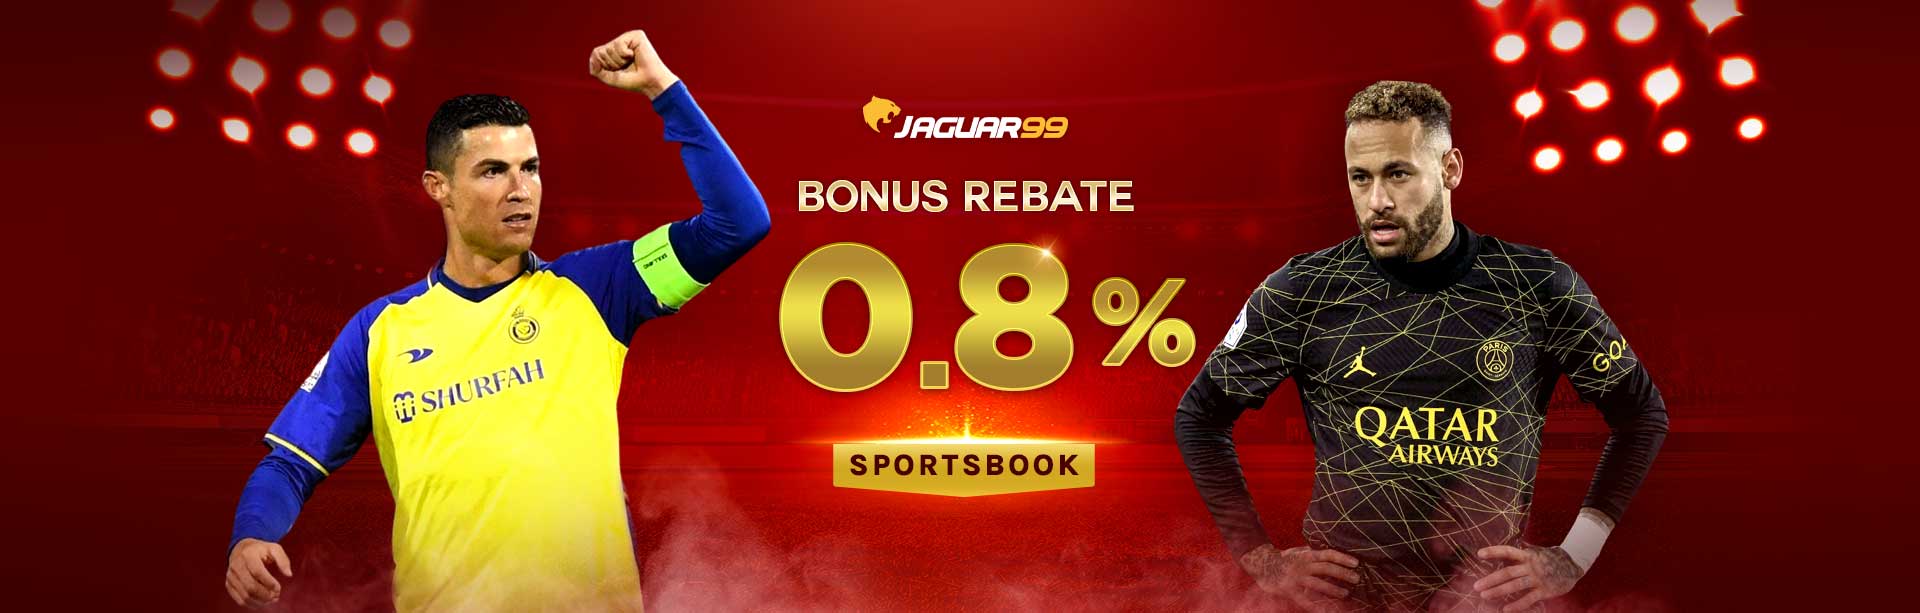 Jaguar99 Bonus Rebate 0.8% Sportsbook